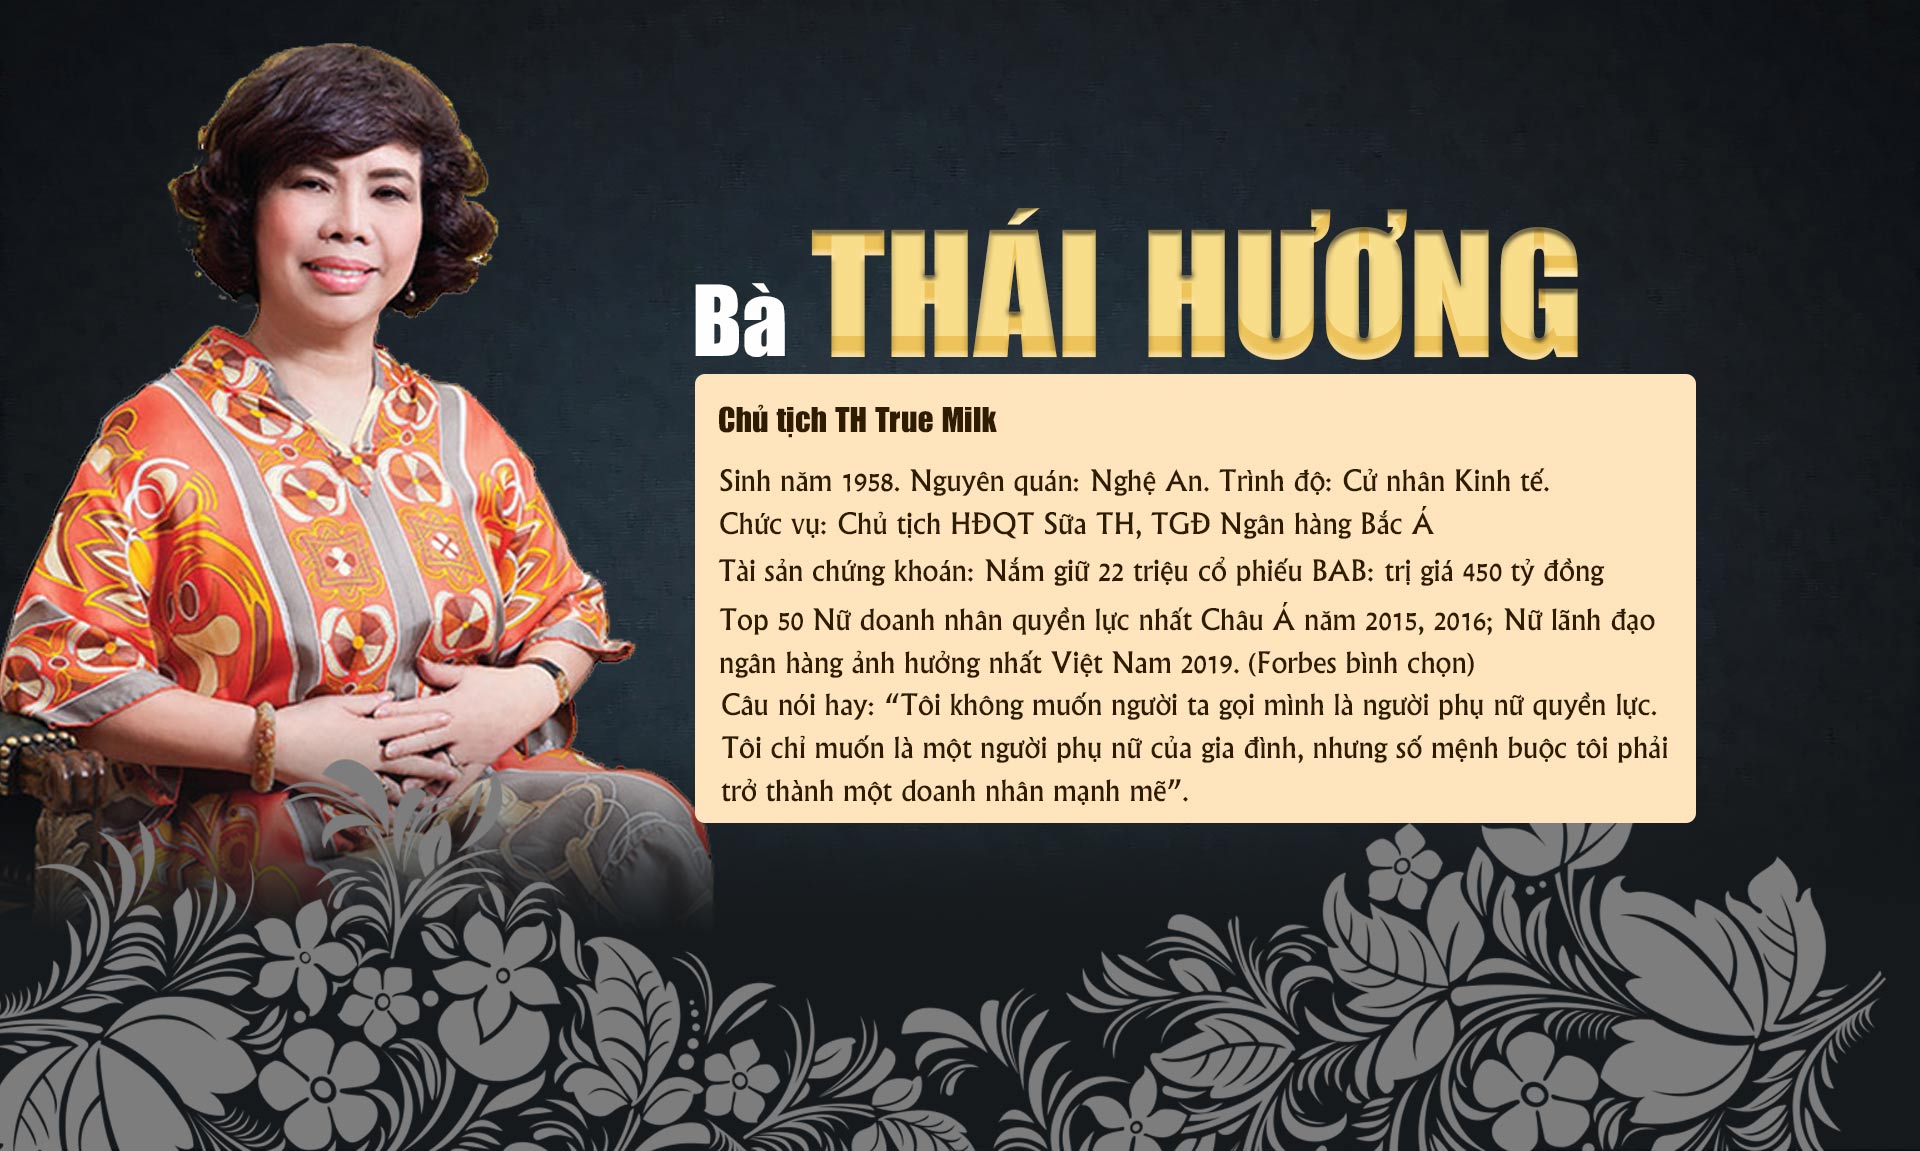 10 phụ nữ Việt gây choáng bởi sự giàu có, giỏi giang và quyền lực - 7